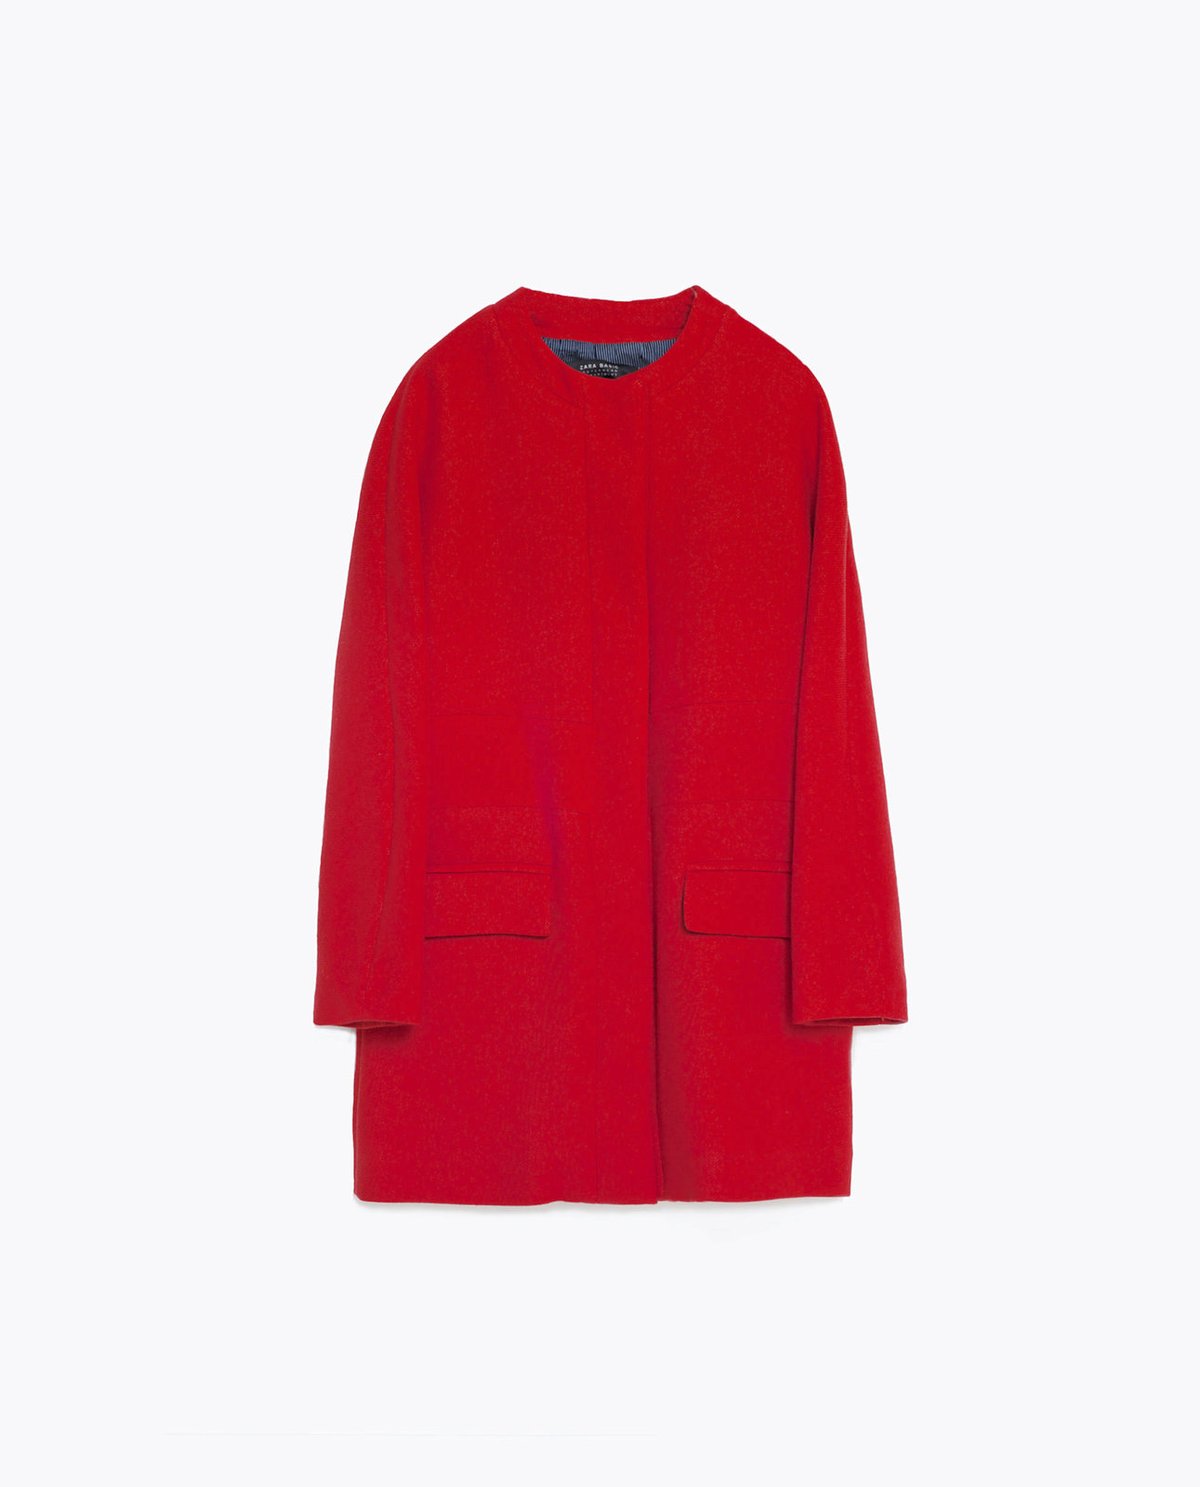 Způsob 3: Bavlněný kabát, Zara, 1999 Kč.